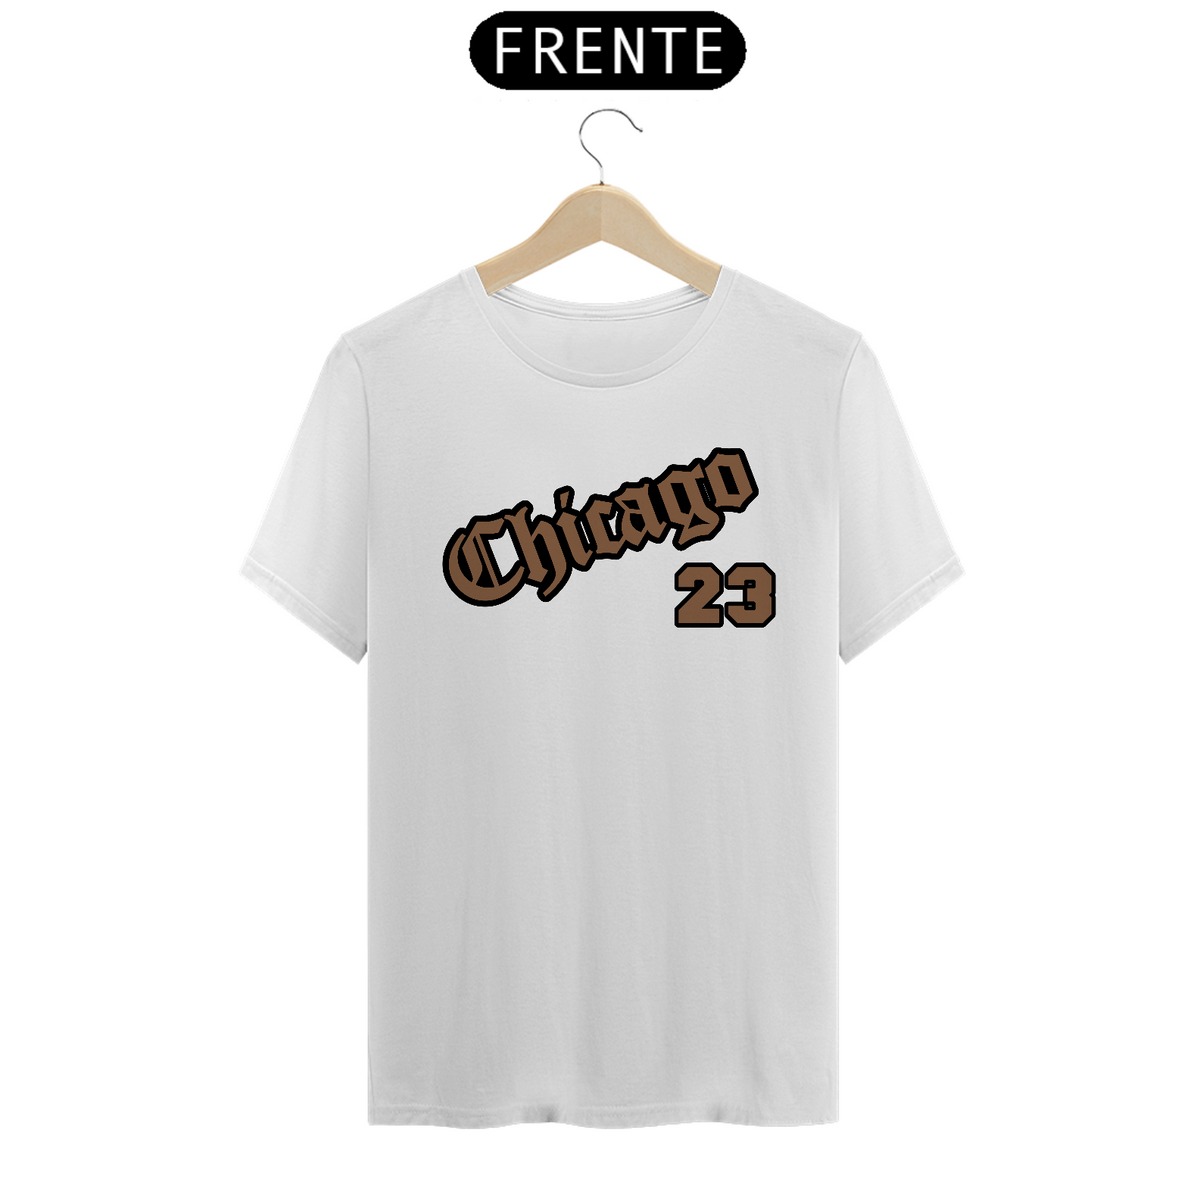 Nome do produto: T-Shirt Chicago